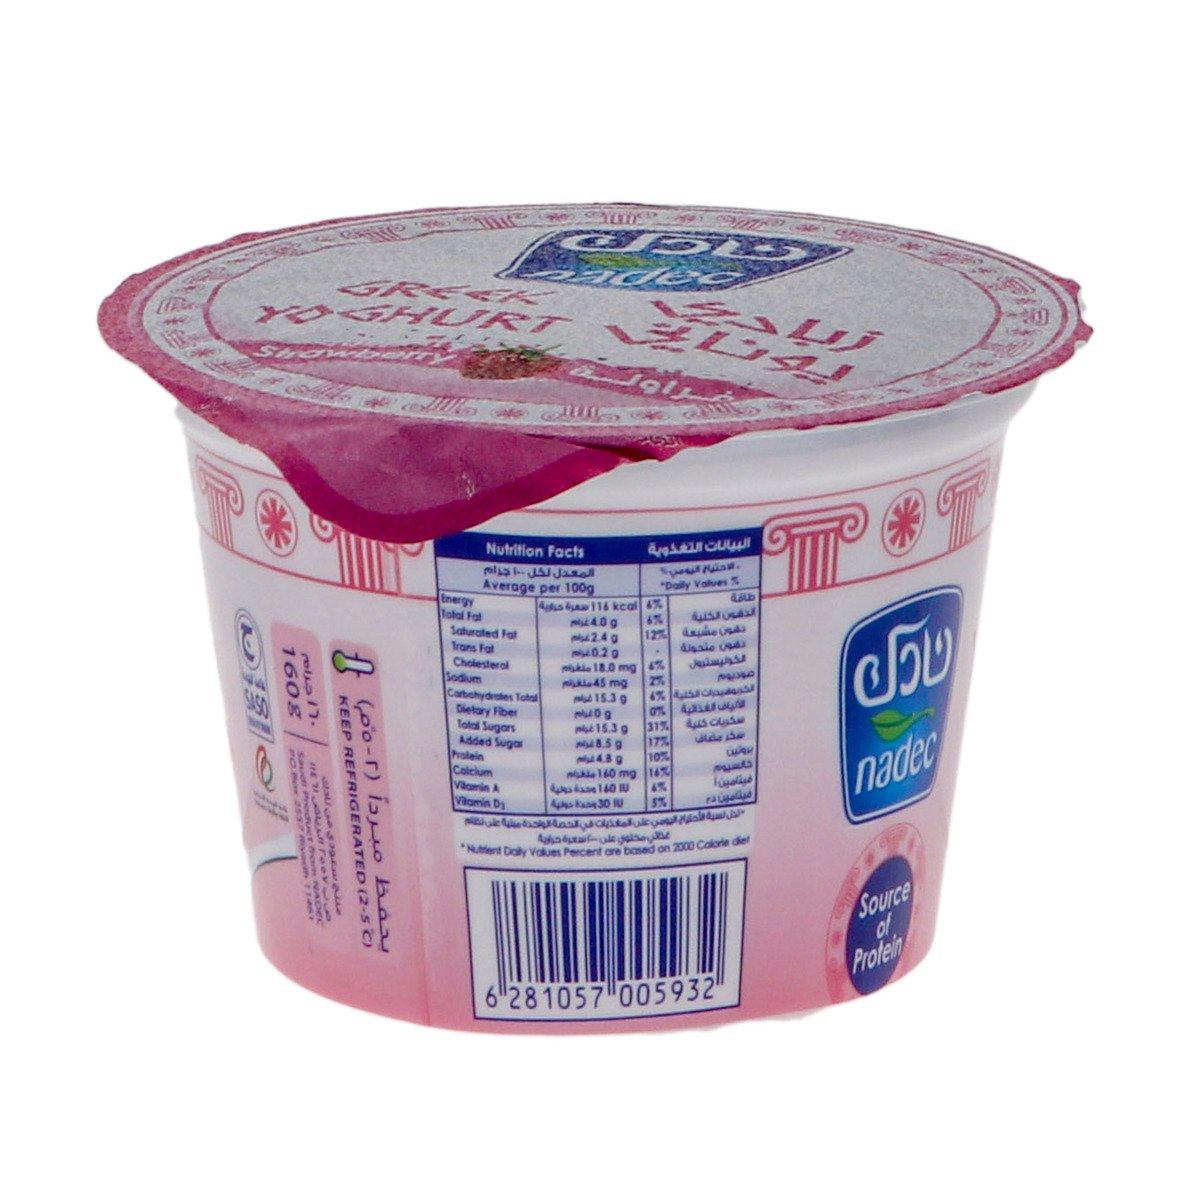 Nadec Strawberry Greek Yoghurt 160g 2+1